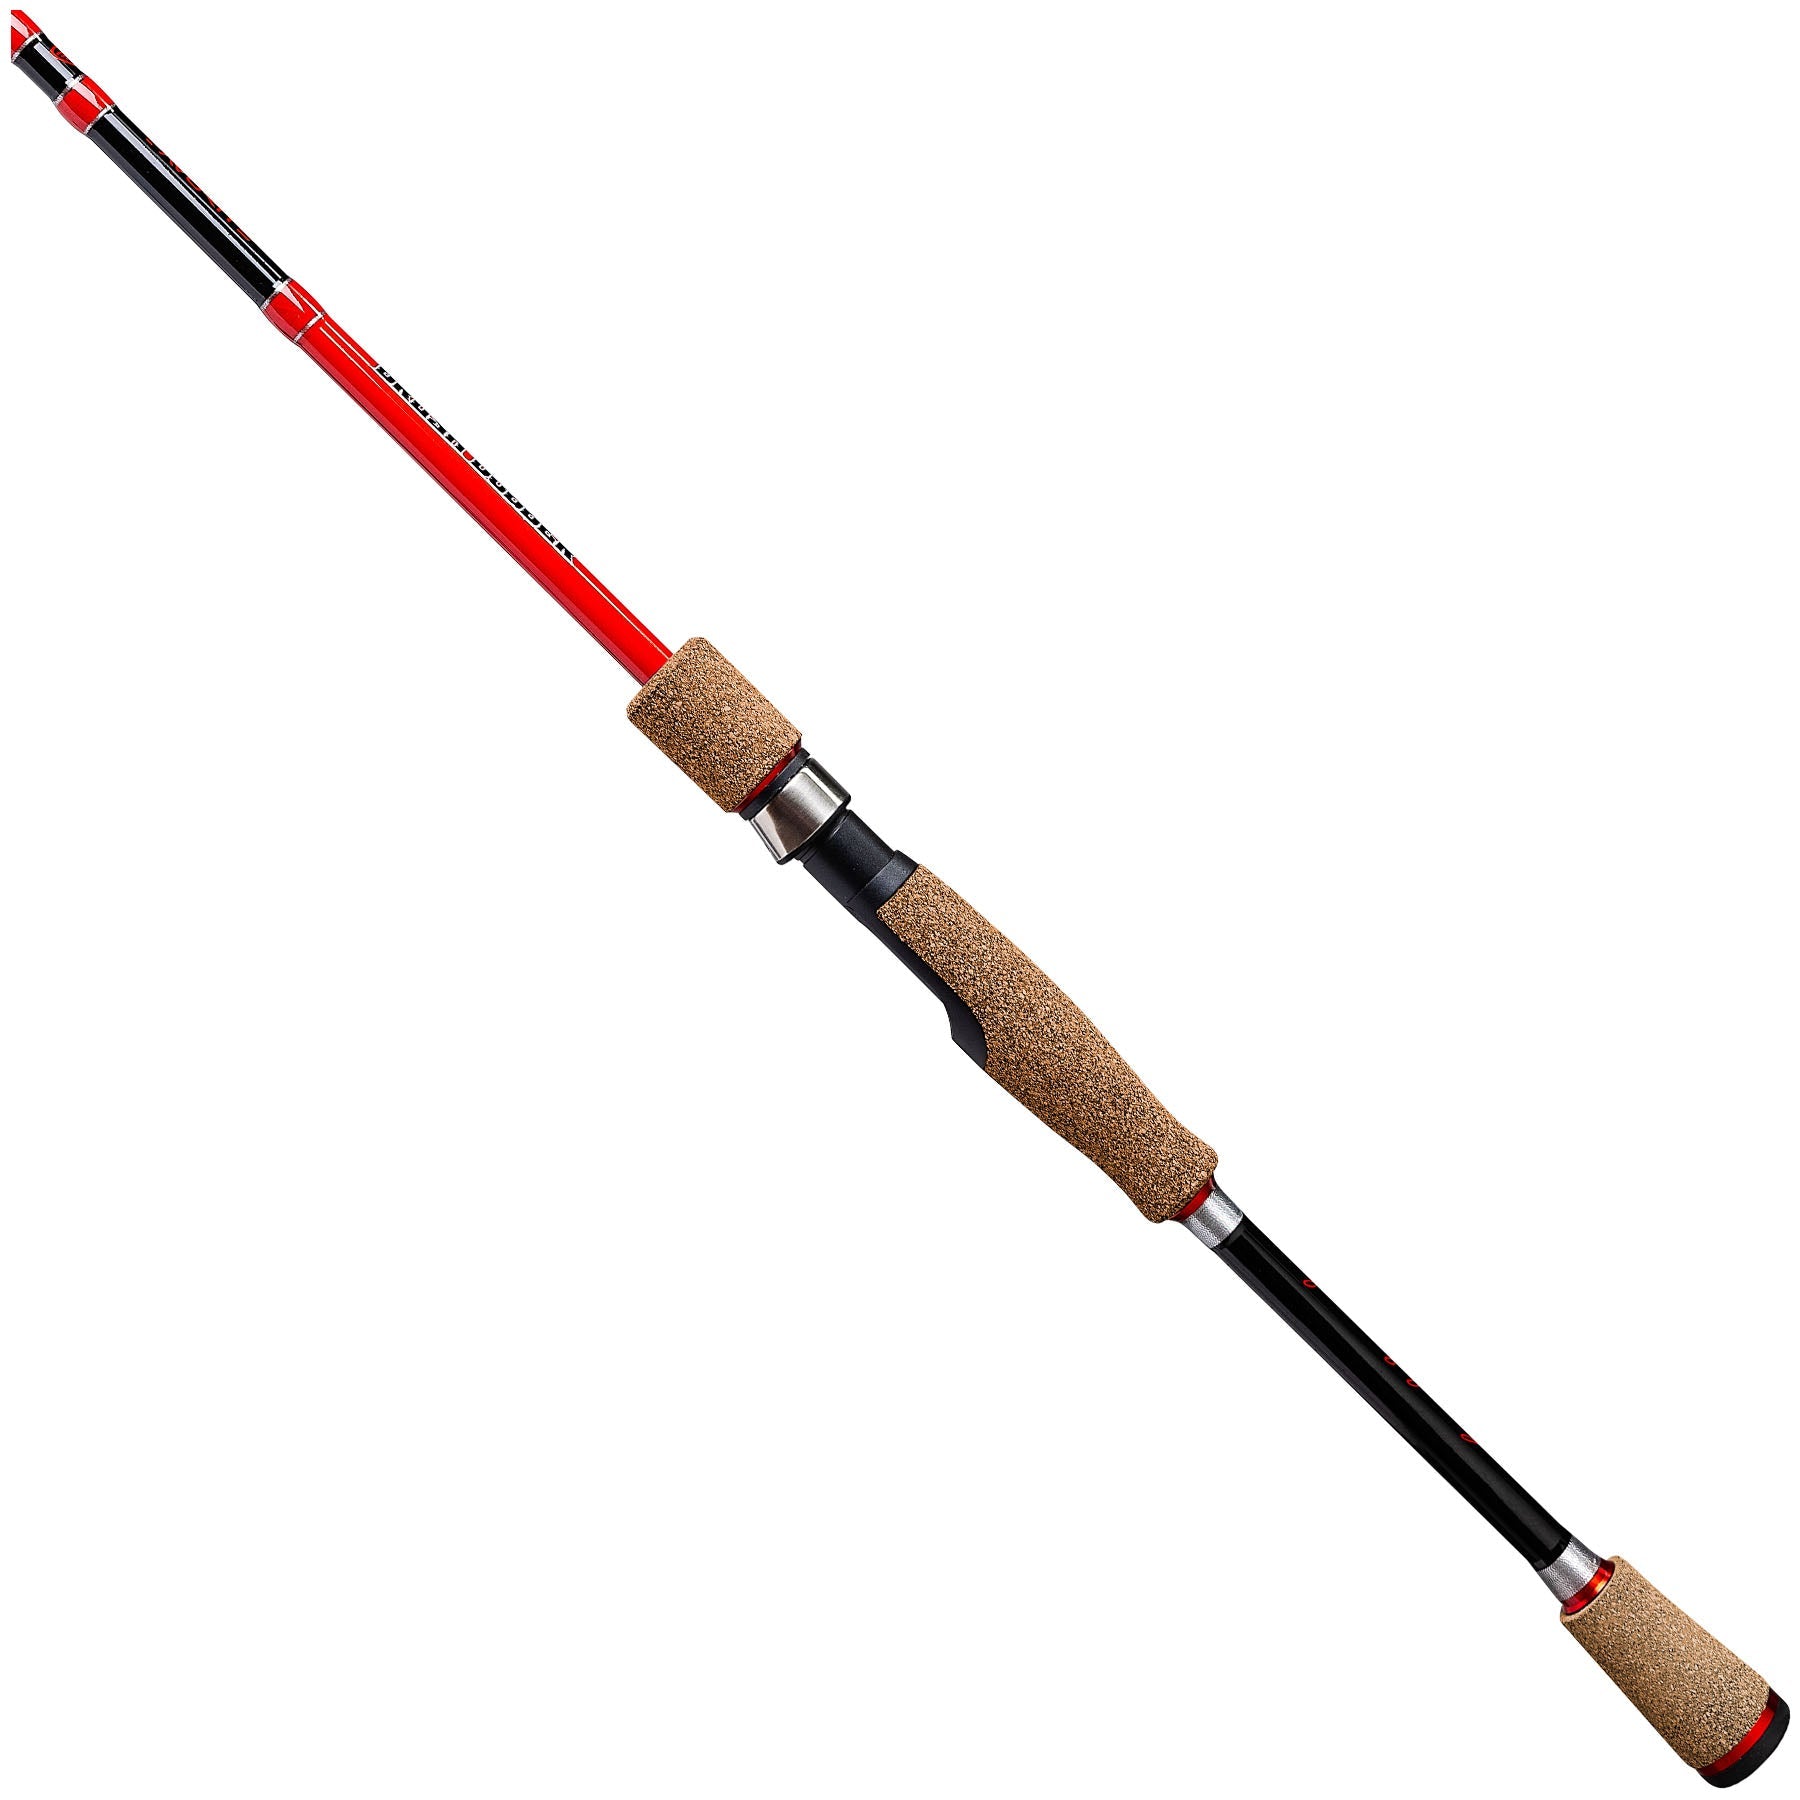 Berkley Crappie Fishing Rods & Poles for sale